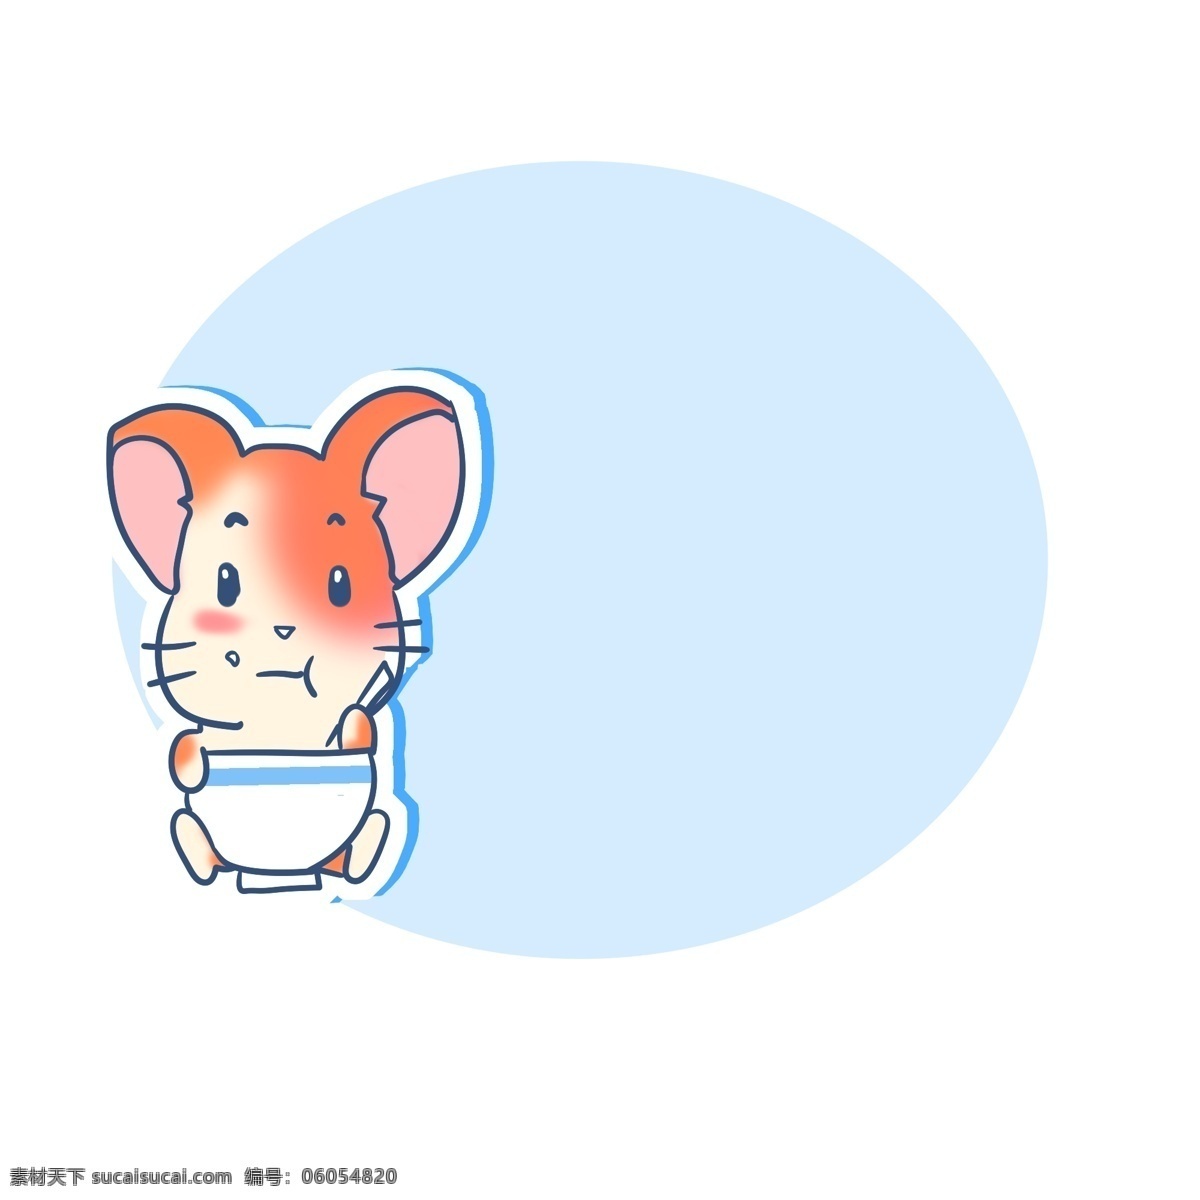 温馨 提示 小 老鼠 边框 小老鼠边框 温馨提示边框 卡通边框 可爱的小老鼠 警示 蓝色边框 小动物边框